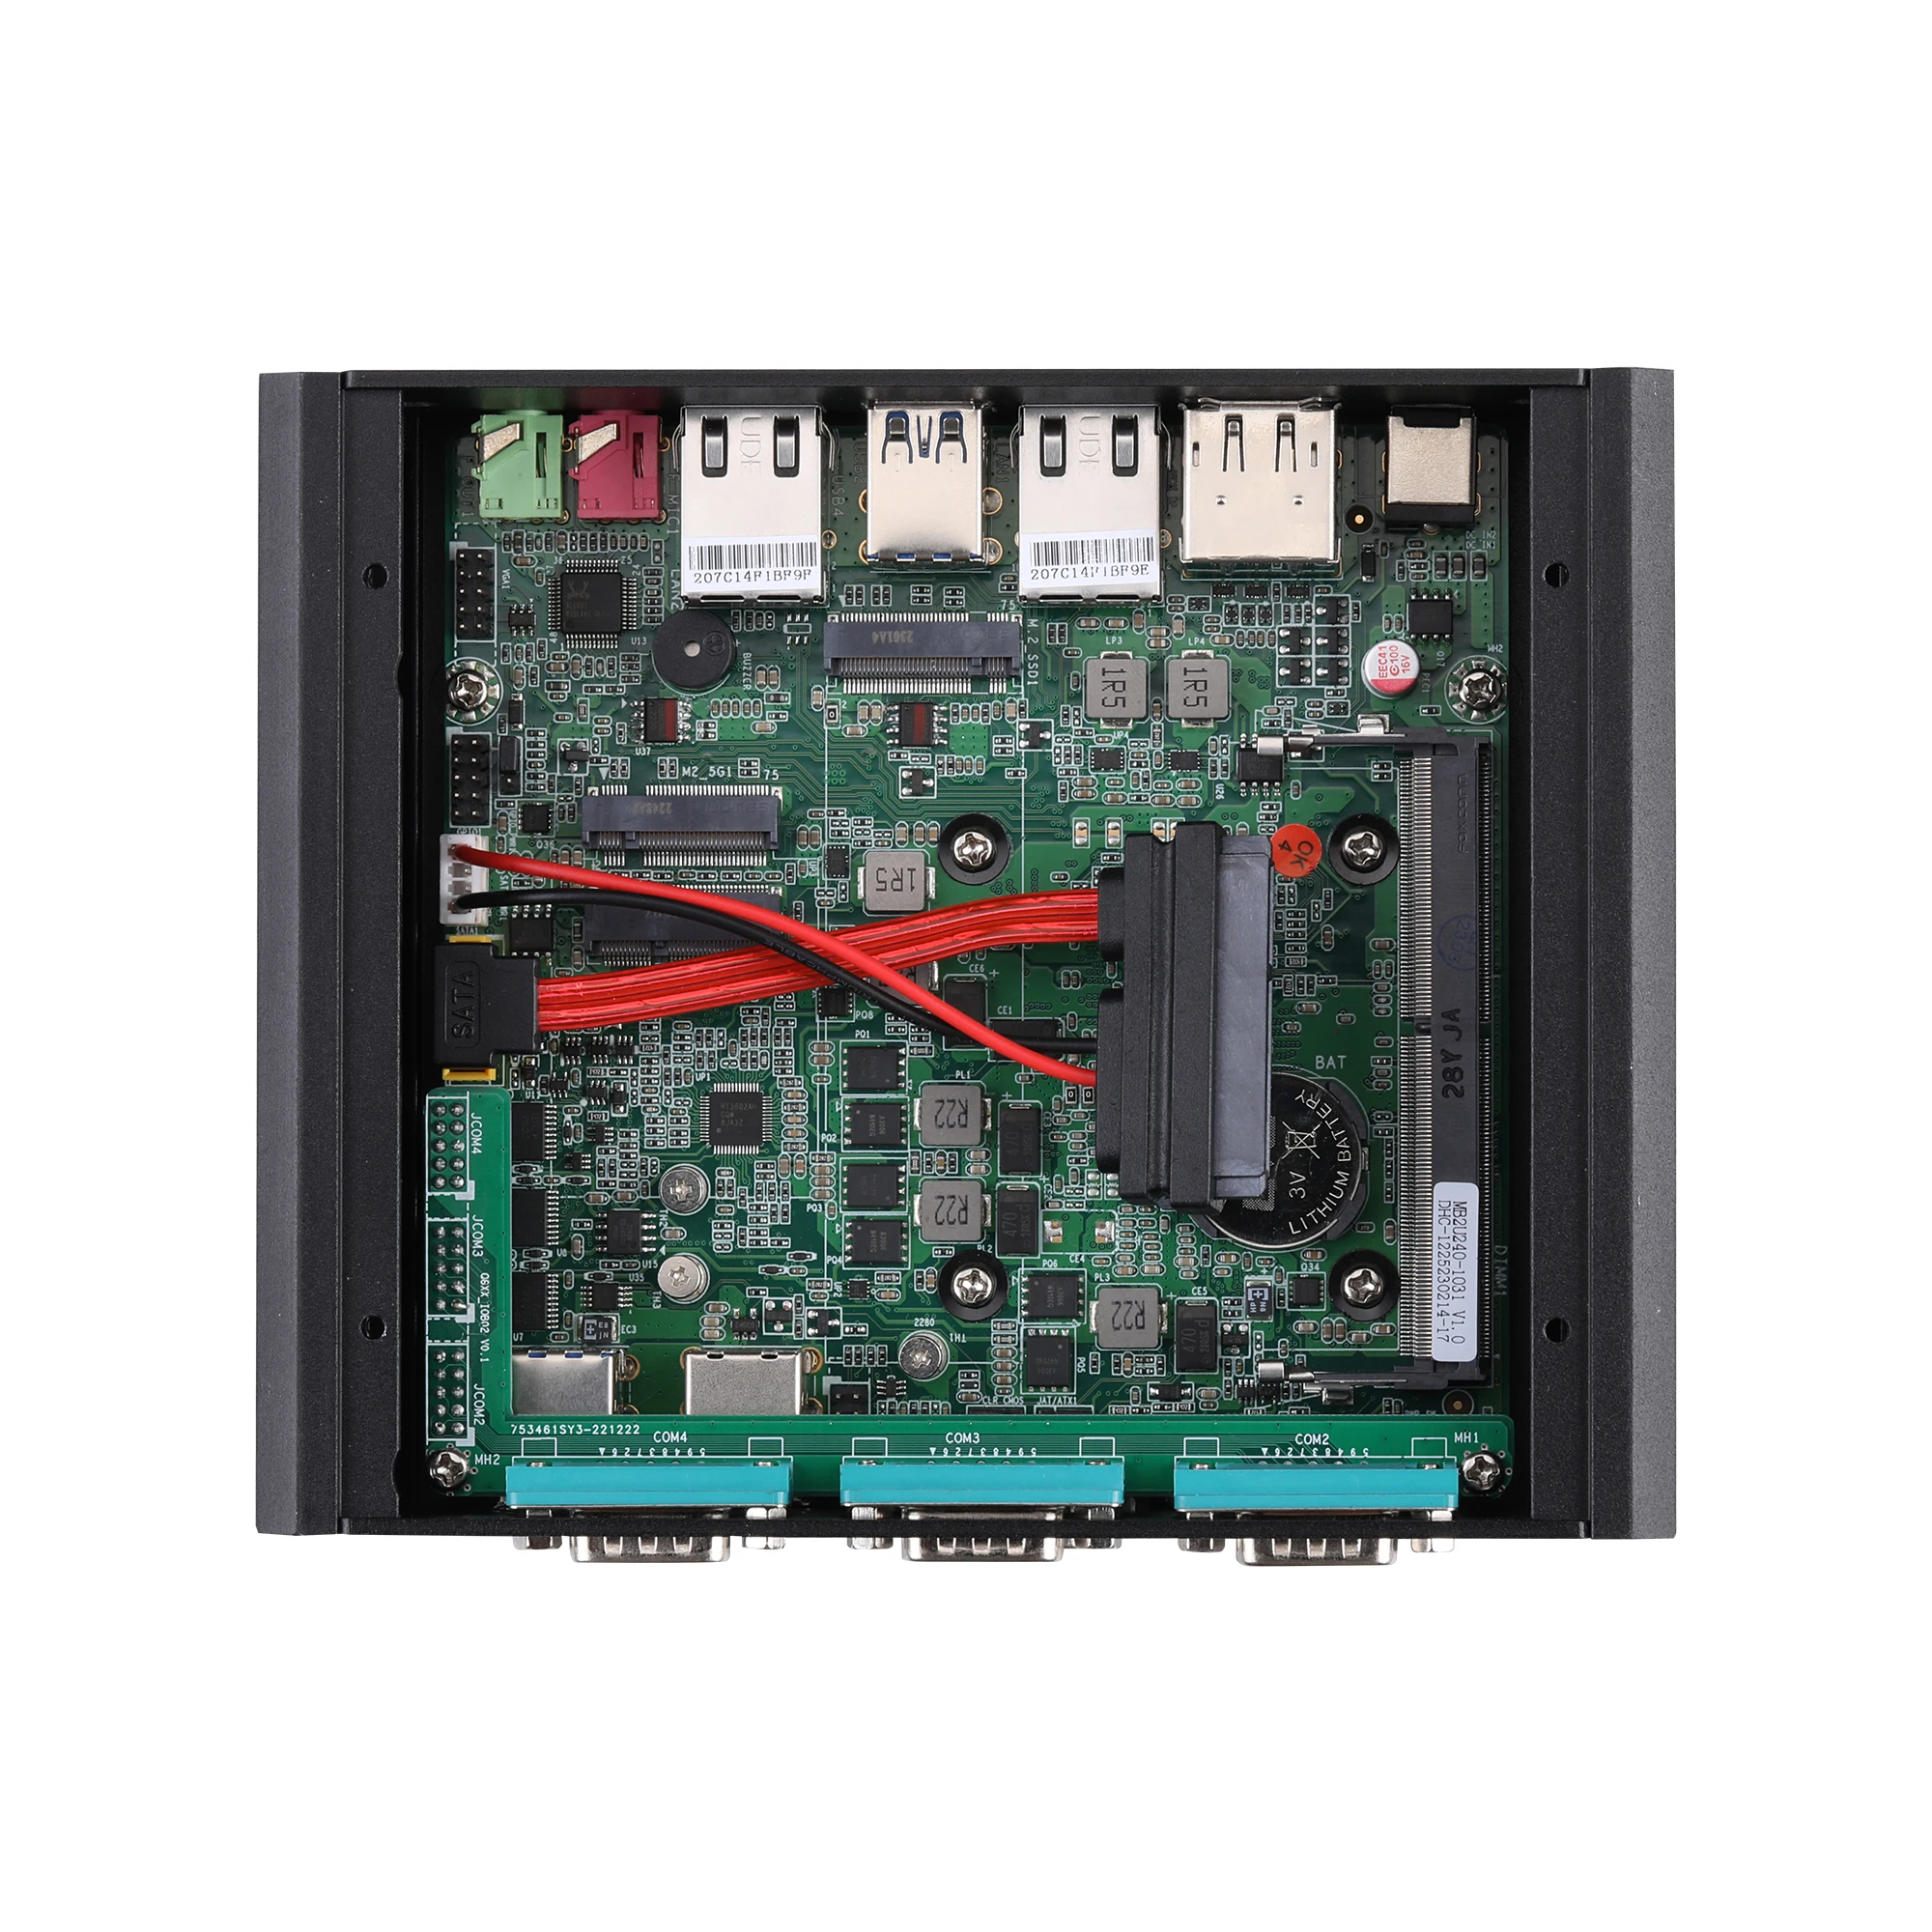 QOTOM-Processeur sans ventilateur Celeron 4305U/Core, LAN Gigabit 15W 2*2.5, 4 * RS232, Mini PC Q30912P Qravi 31P i3-10110U